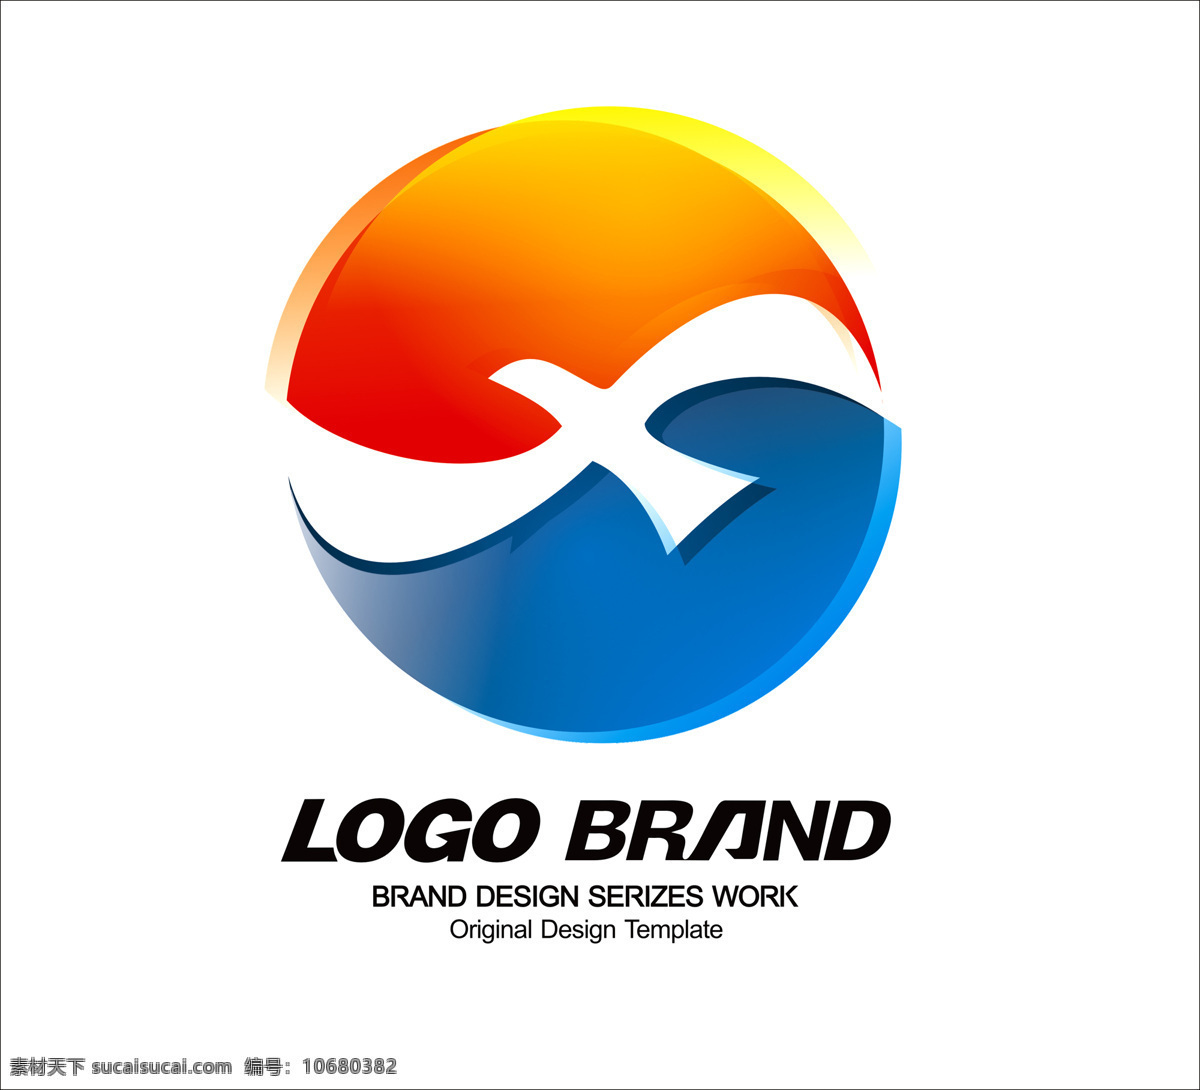 创意 大气 红蓝 飞鸟 公司 logo 企业 标志设计 公司标志设计 企业标志设计 漂亮 x 字母 s 大鹏 展翅